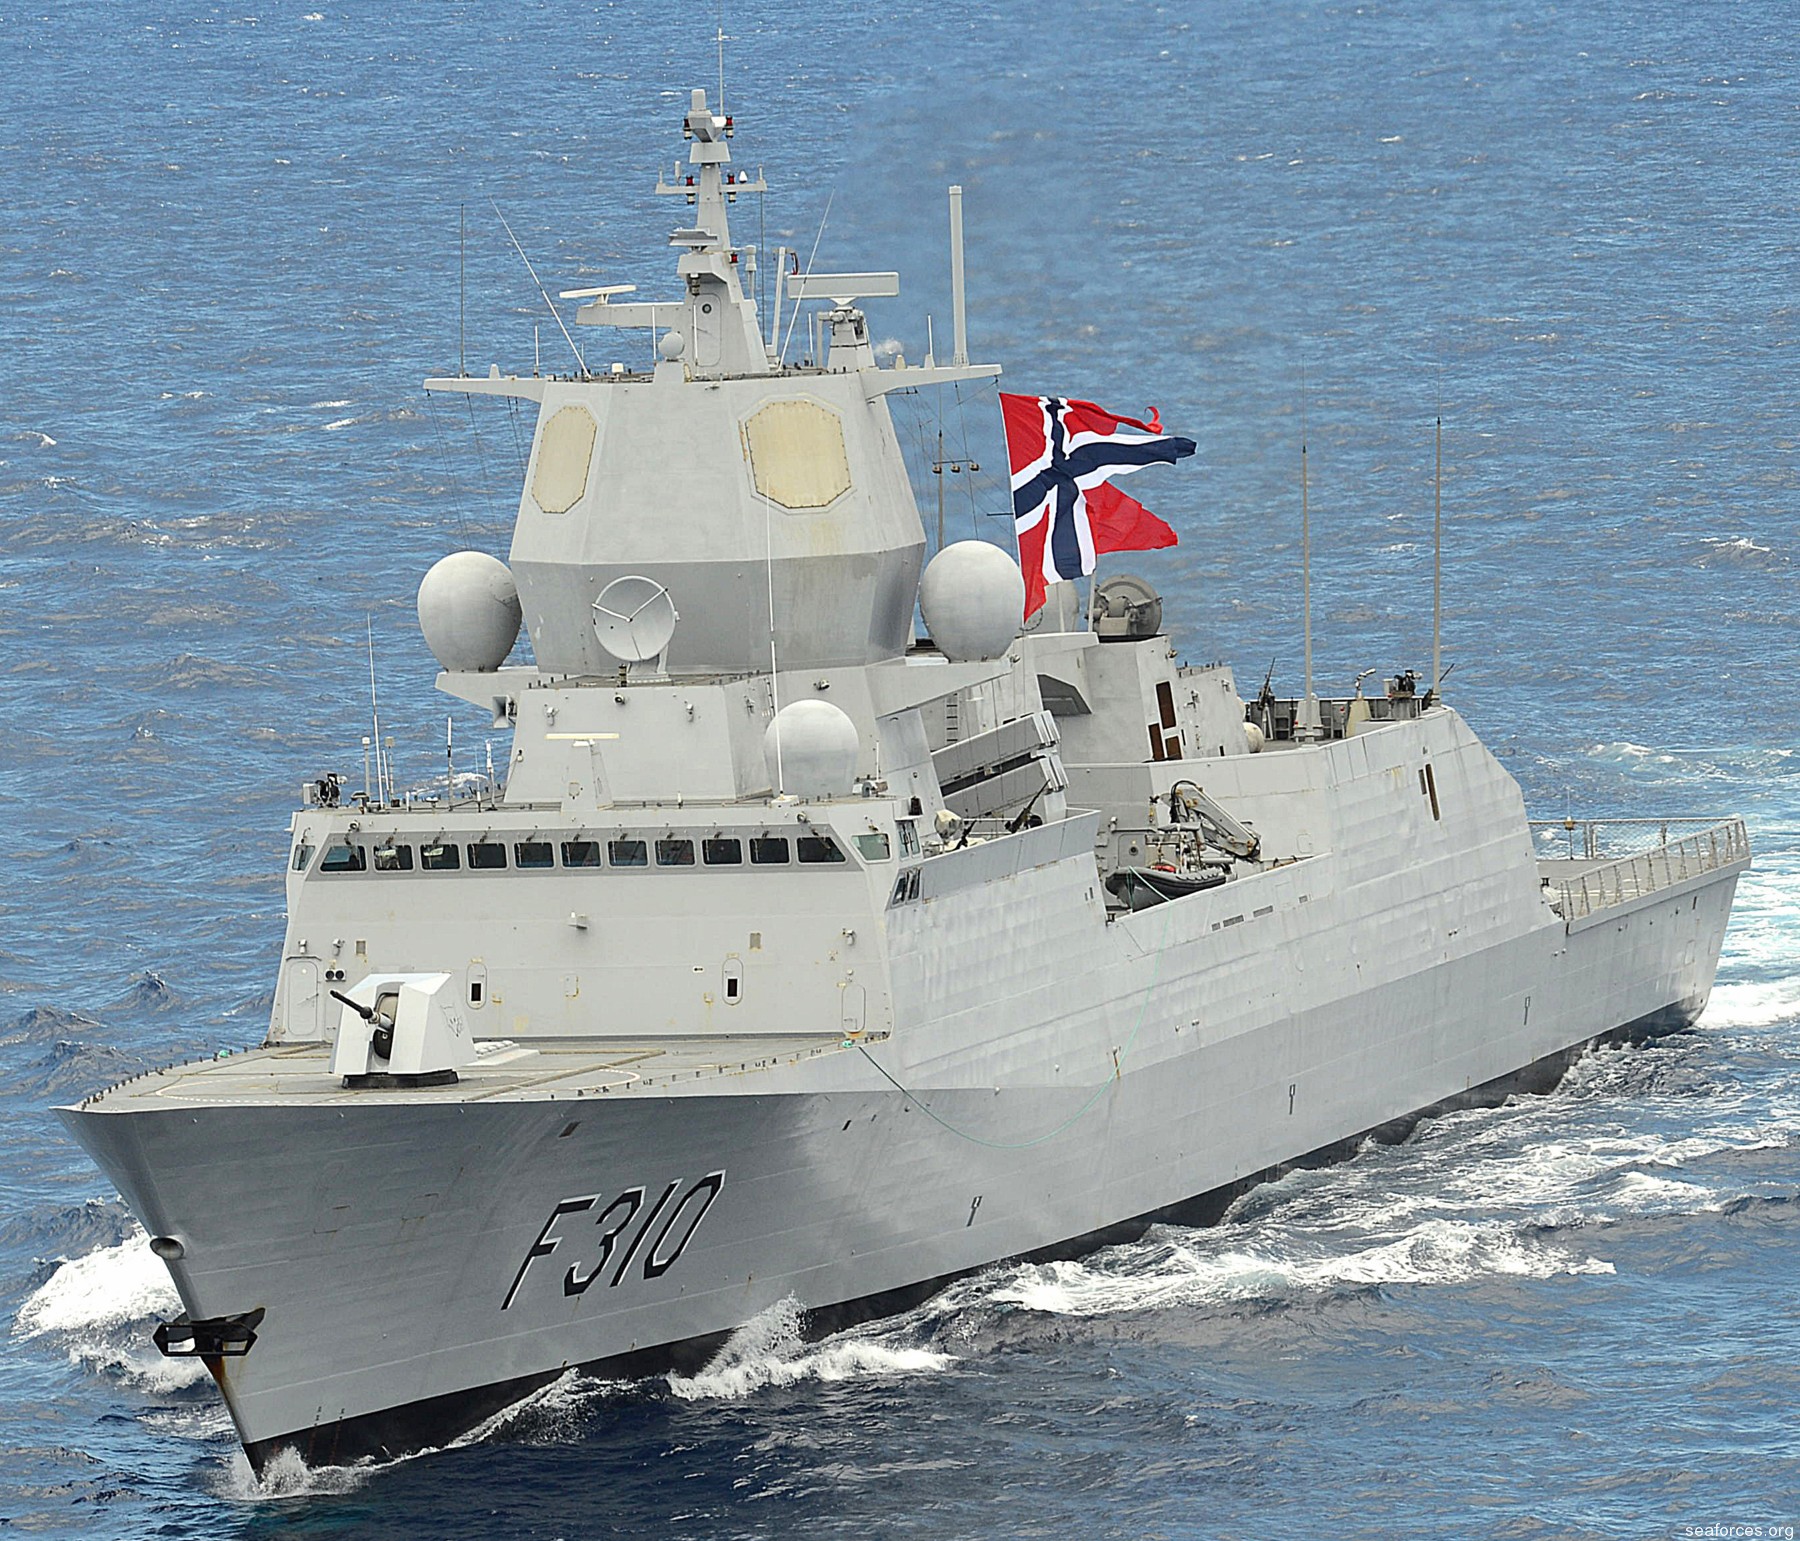 f-310 fridtjof nansen hnoms knm frigate royal norwegian navy sjoforsvaret 12